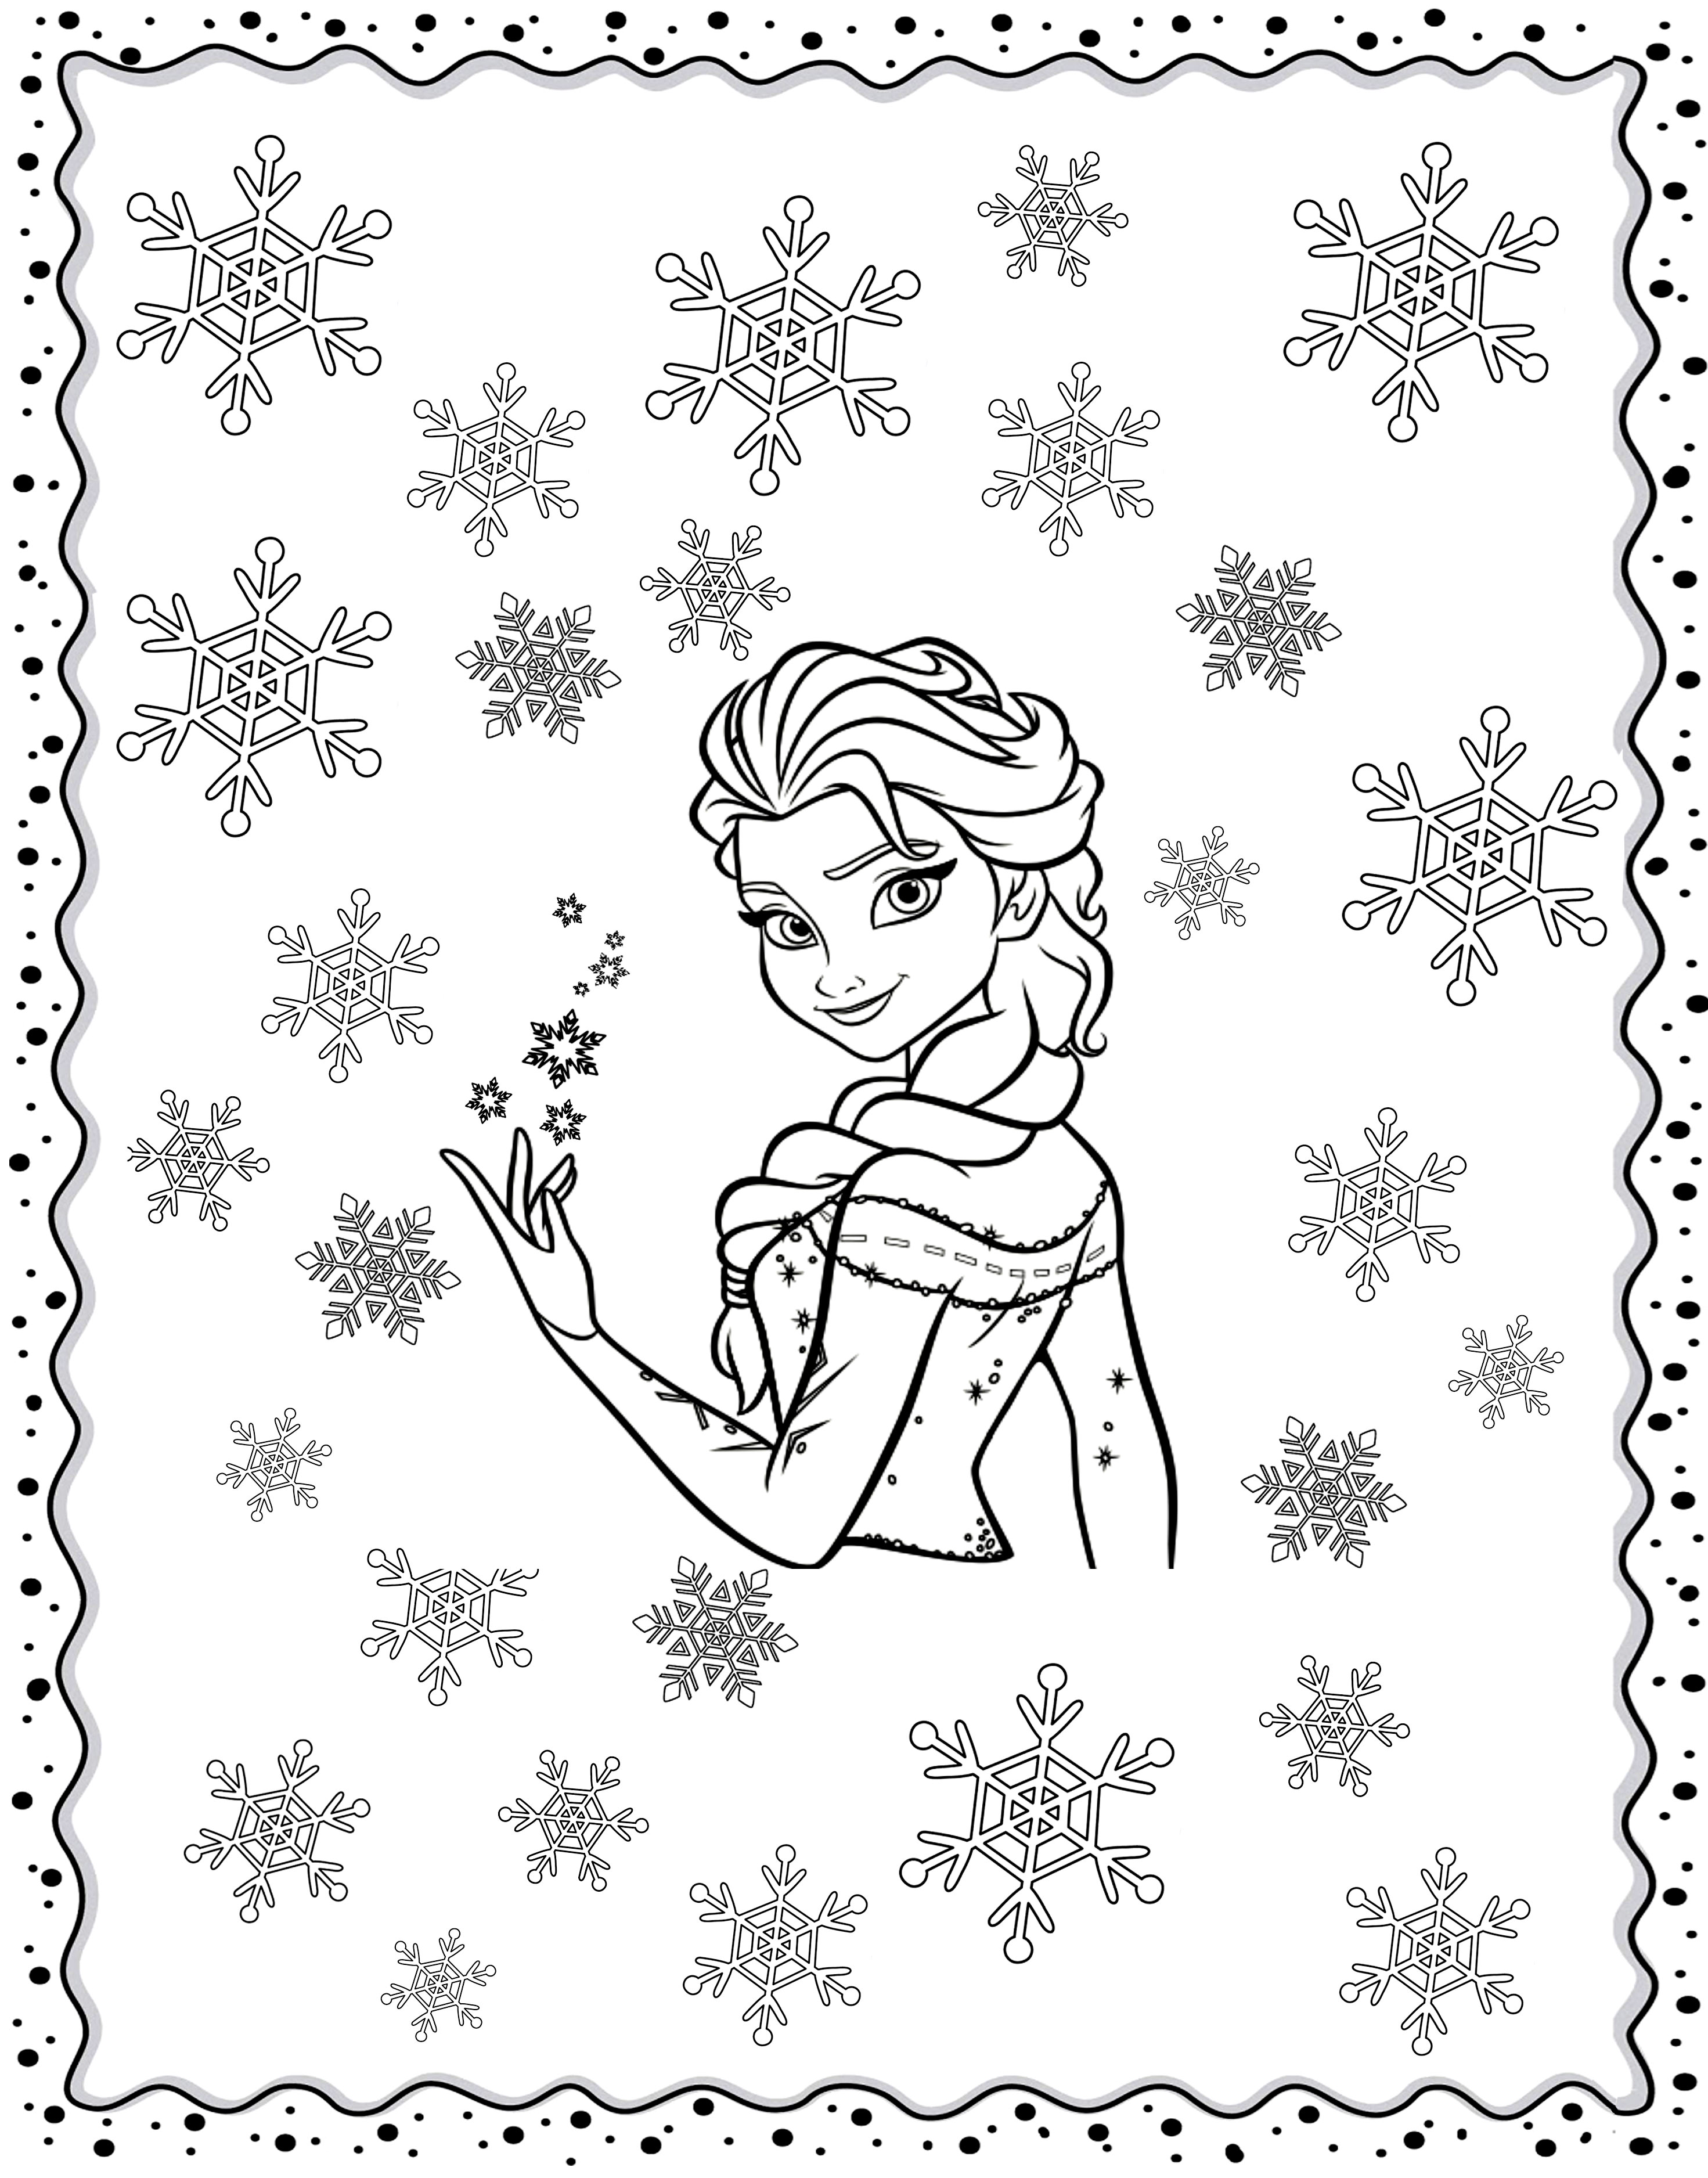 Colorazione originale ispirata a Frozen, con Elsa in mezzo ai fiocchi invernali